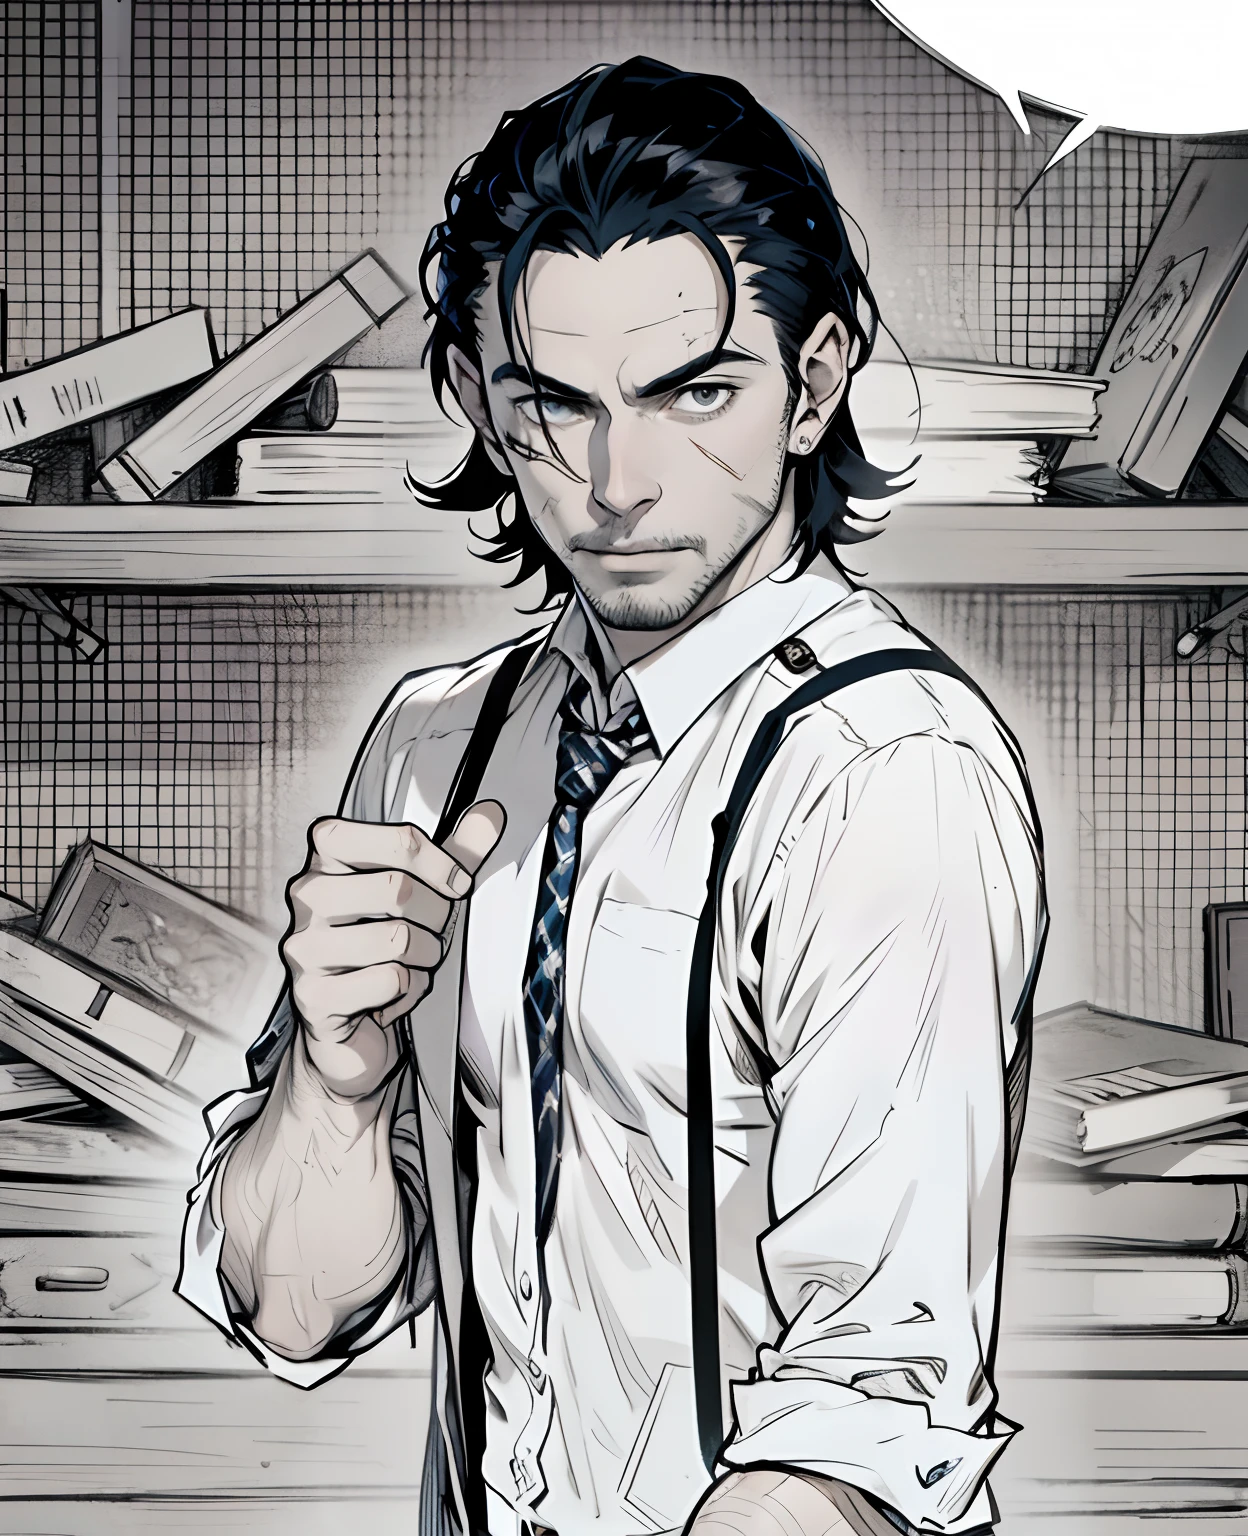 صورة لرجل في ربطة عنق,جول تيتيشي, رجل وسيم في فن قاتل الشياطين,